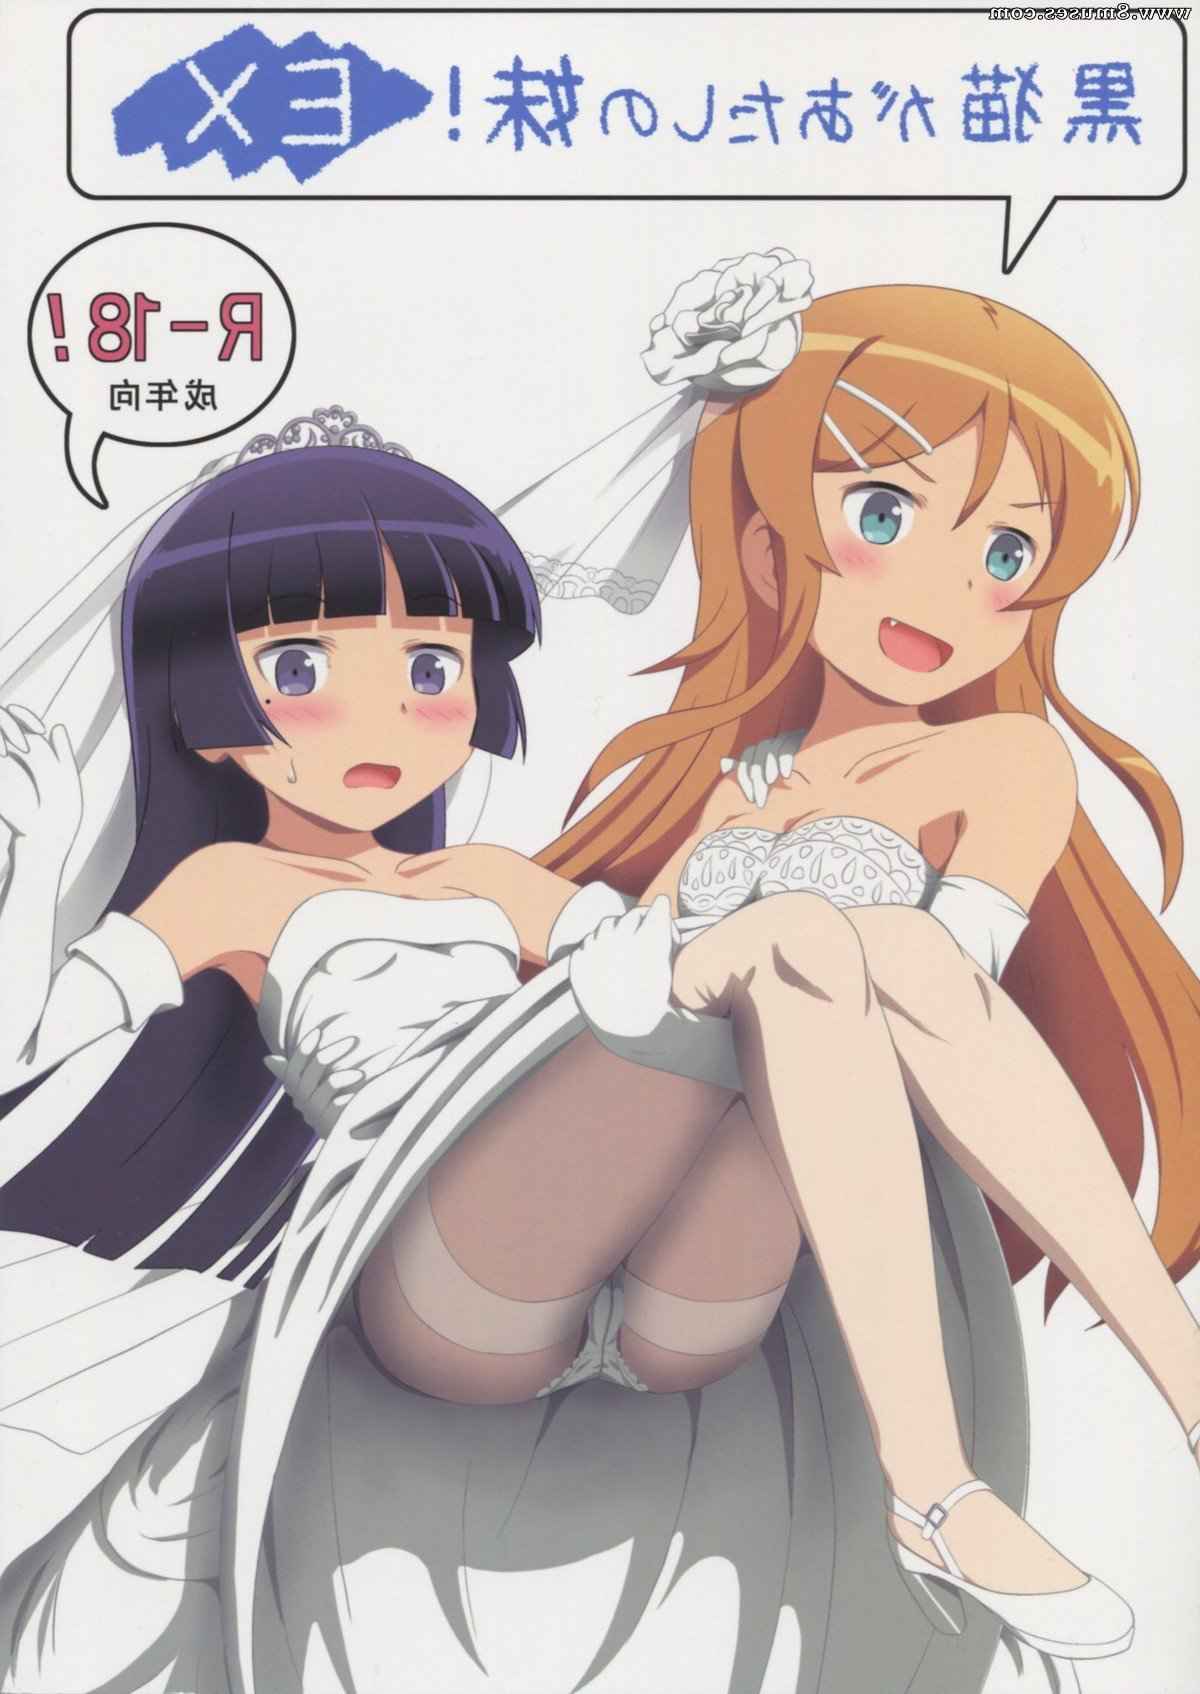 Hentai-and-Manga-English/Ore-no-imouto-ga-konna-ni-kawaii-wake-ga-nai/Kuroneko-ga-Atashi-no-Imouto-EX Kuroneko_ga_Atashi_no_Imouto_EX__8muses_-_Sex_and_Porn_Comics.jpg